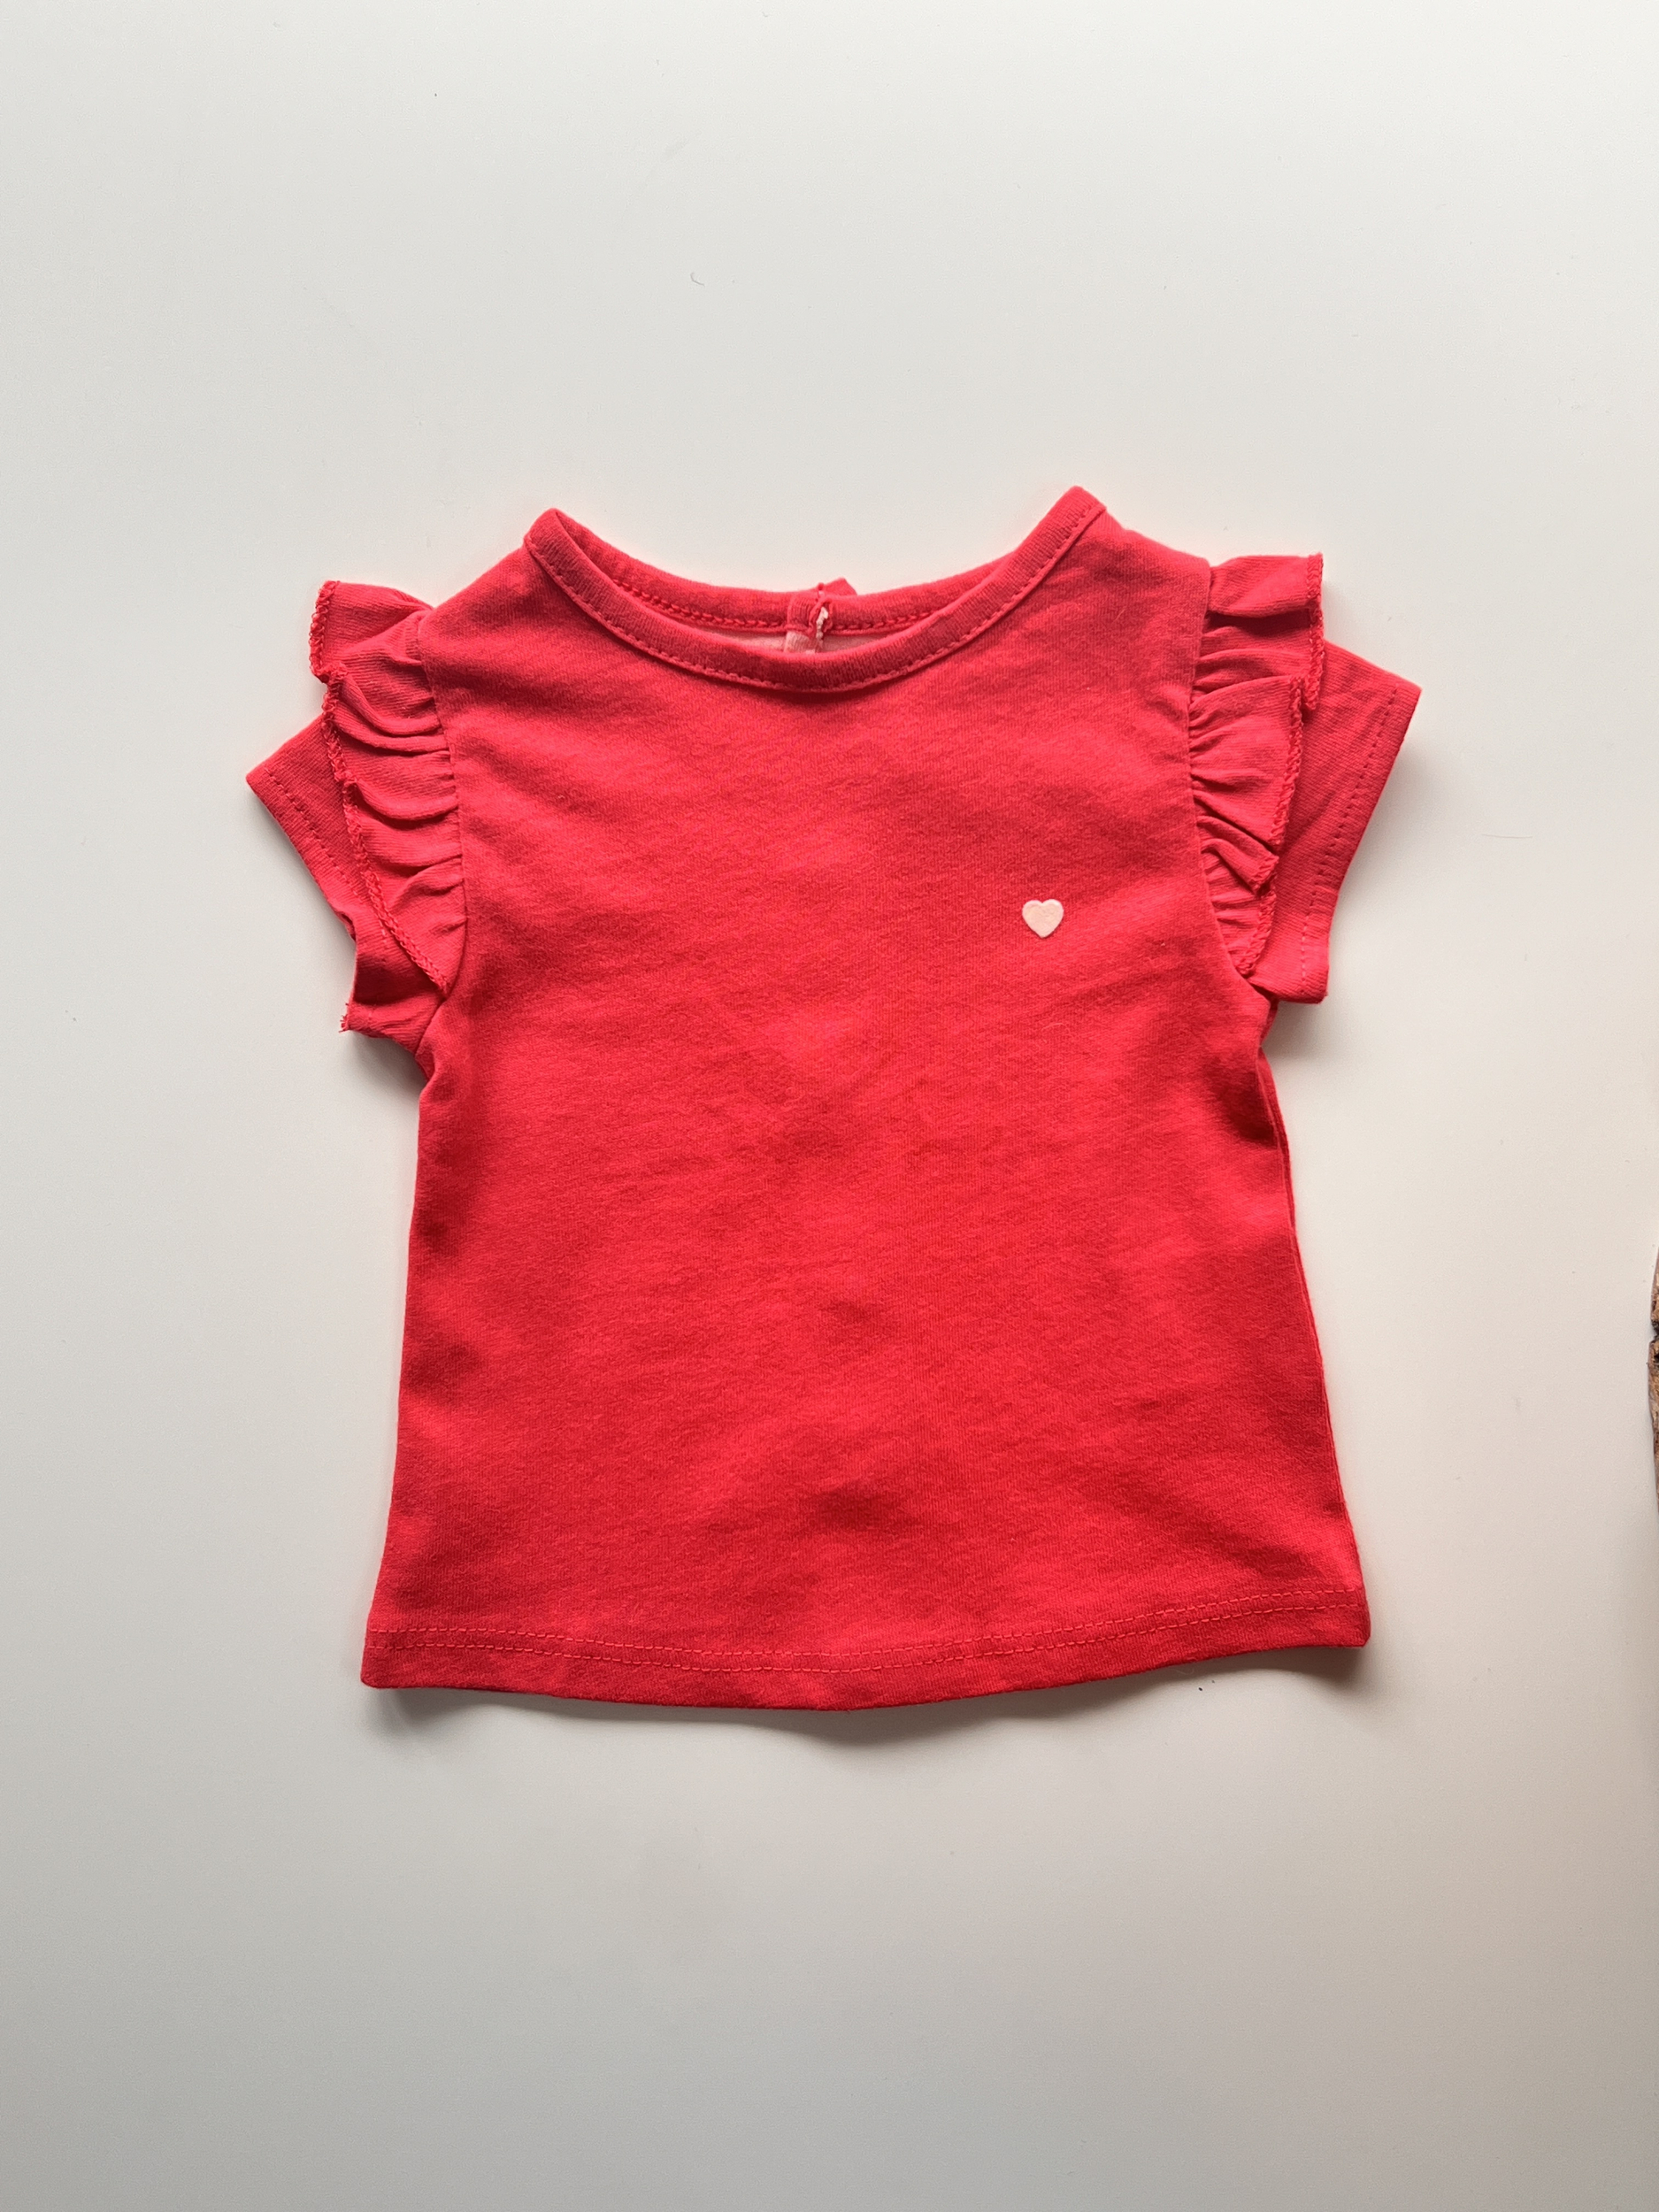 T-shirt rose manches courtes 100% coton bébé fille - Kiabi - 1 mois